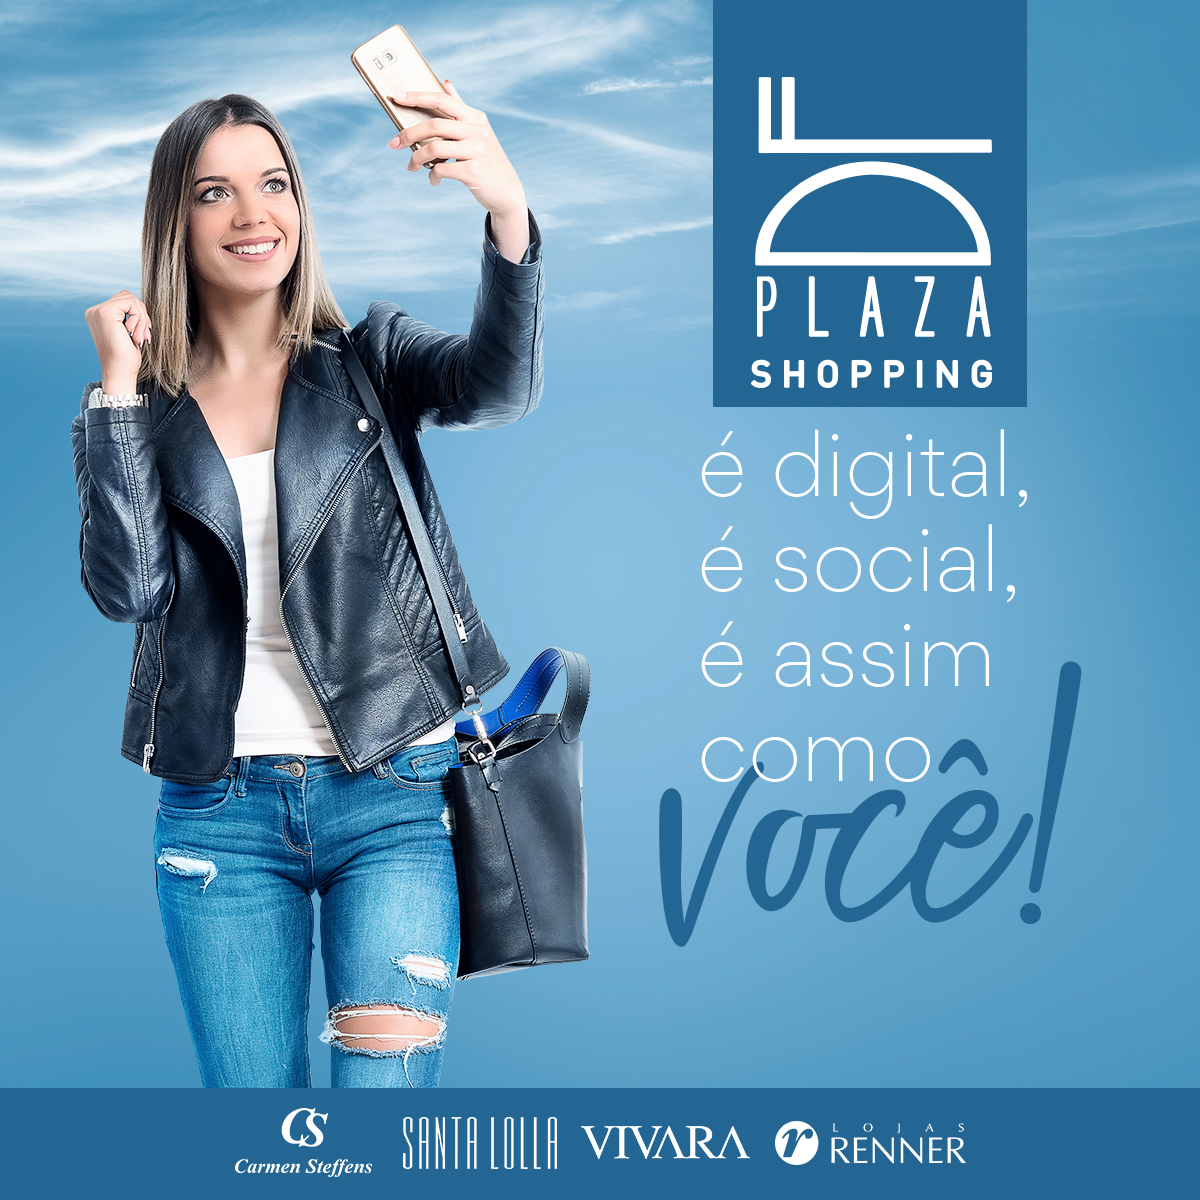 Shopping moda estilo brasilia conceito retouch photoshop  social media